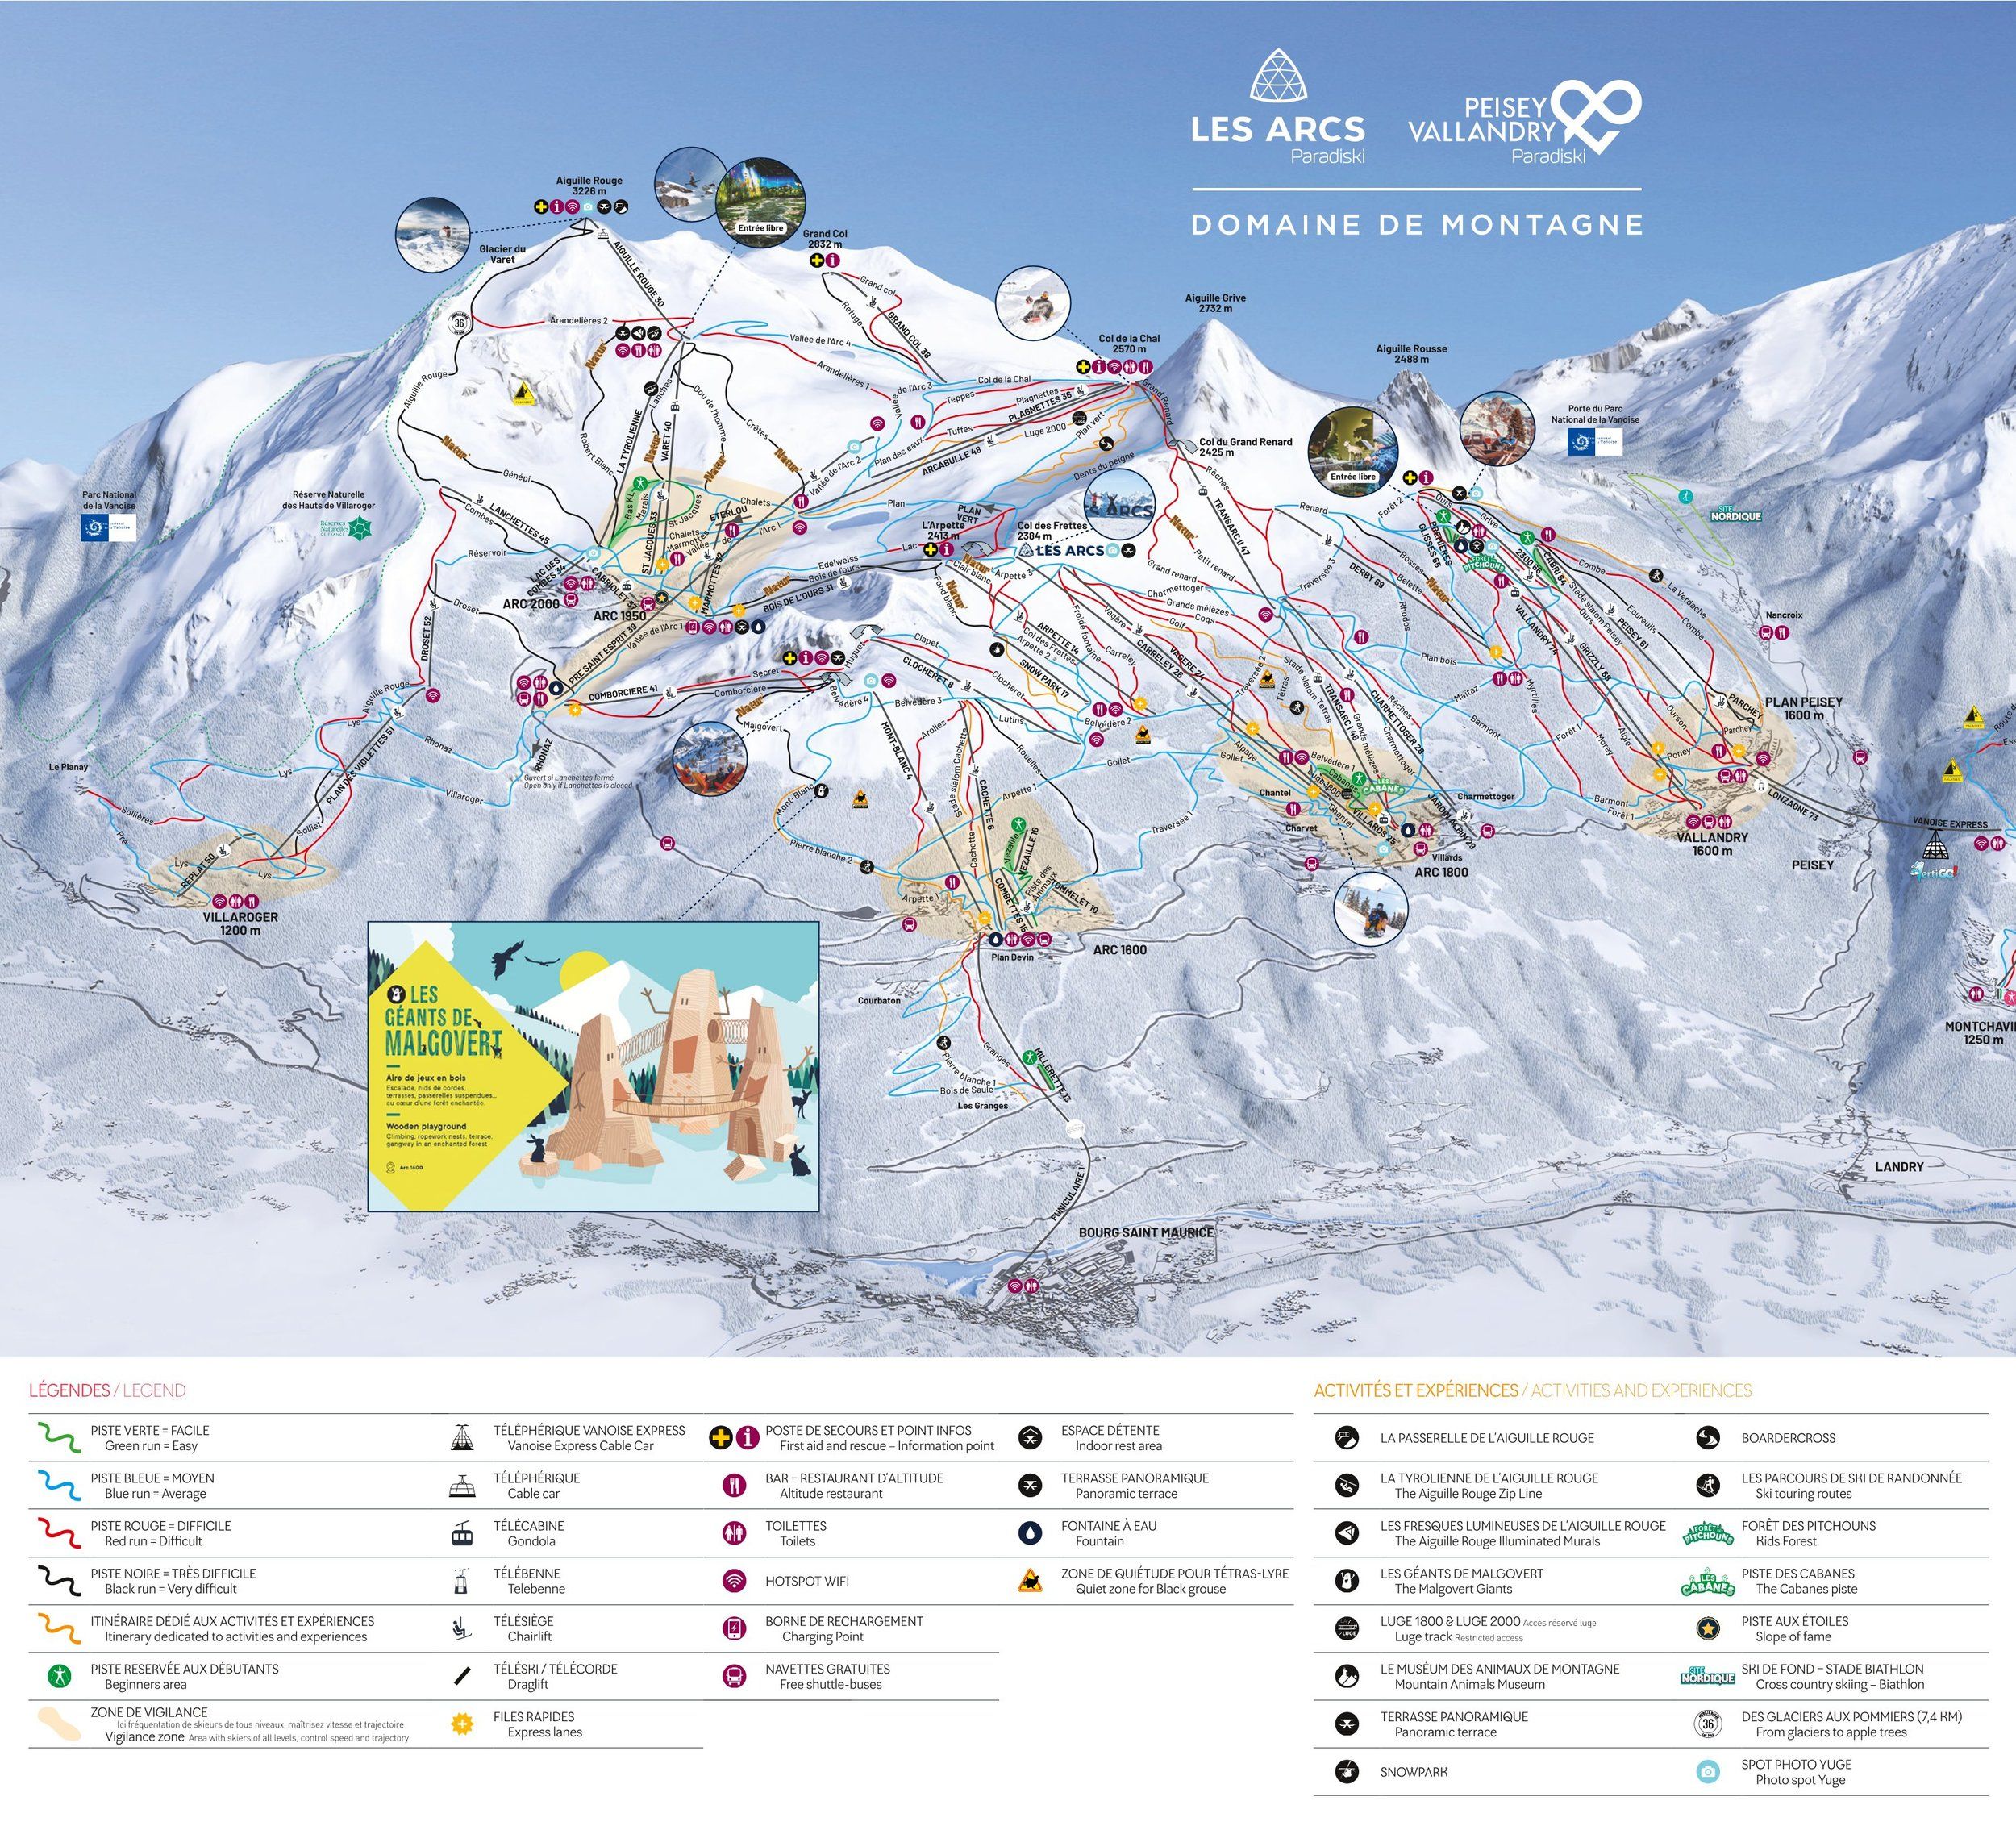 Pistenplan / Karte Skigebiet Les Arcs, Frankreich